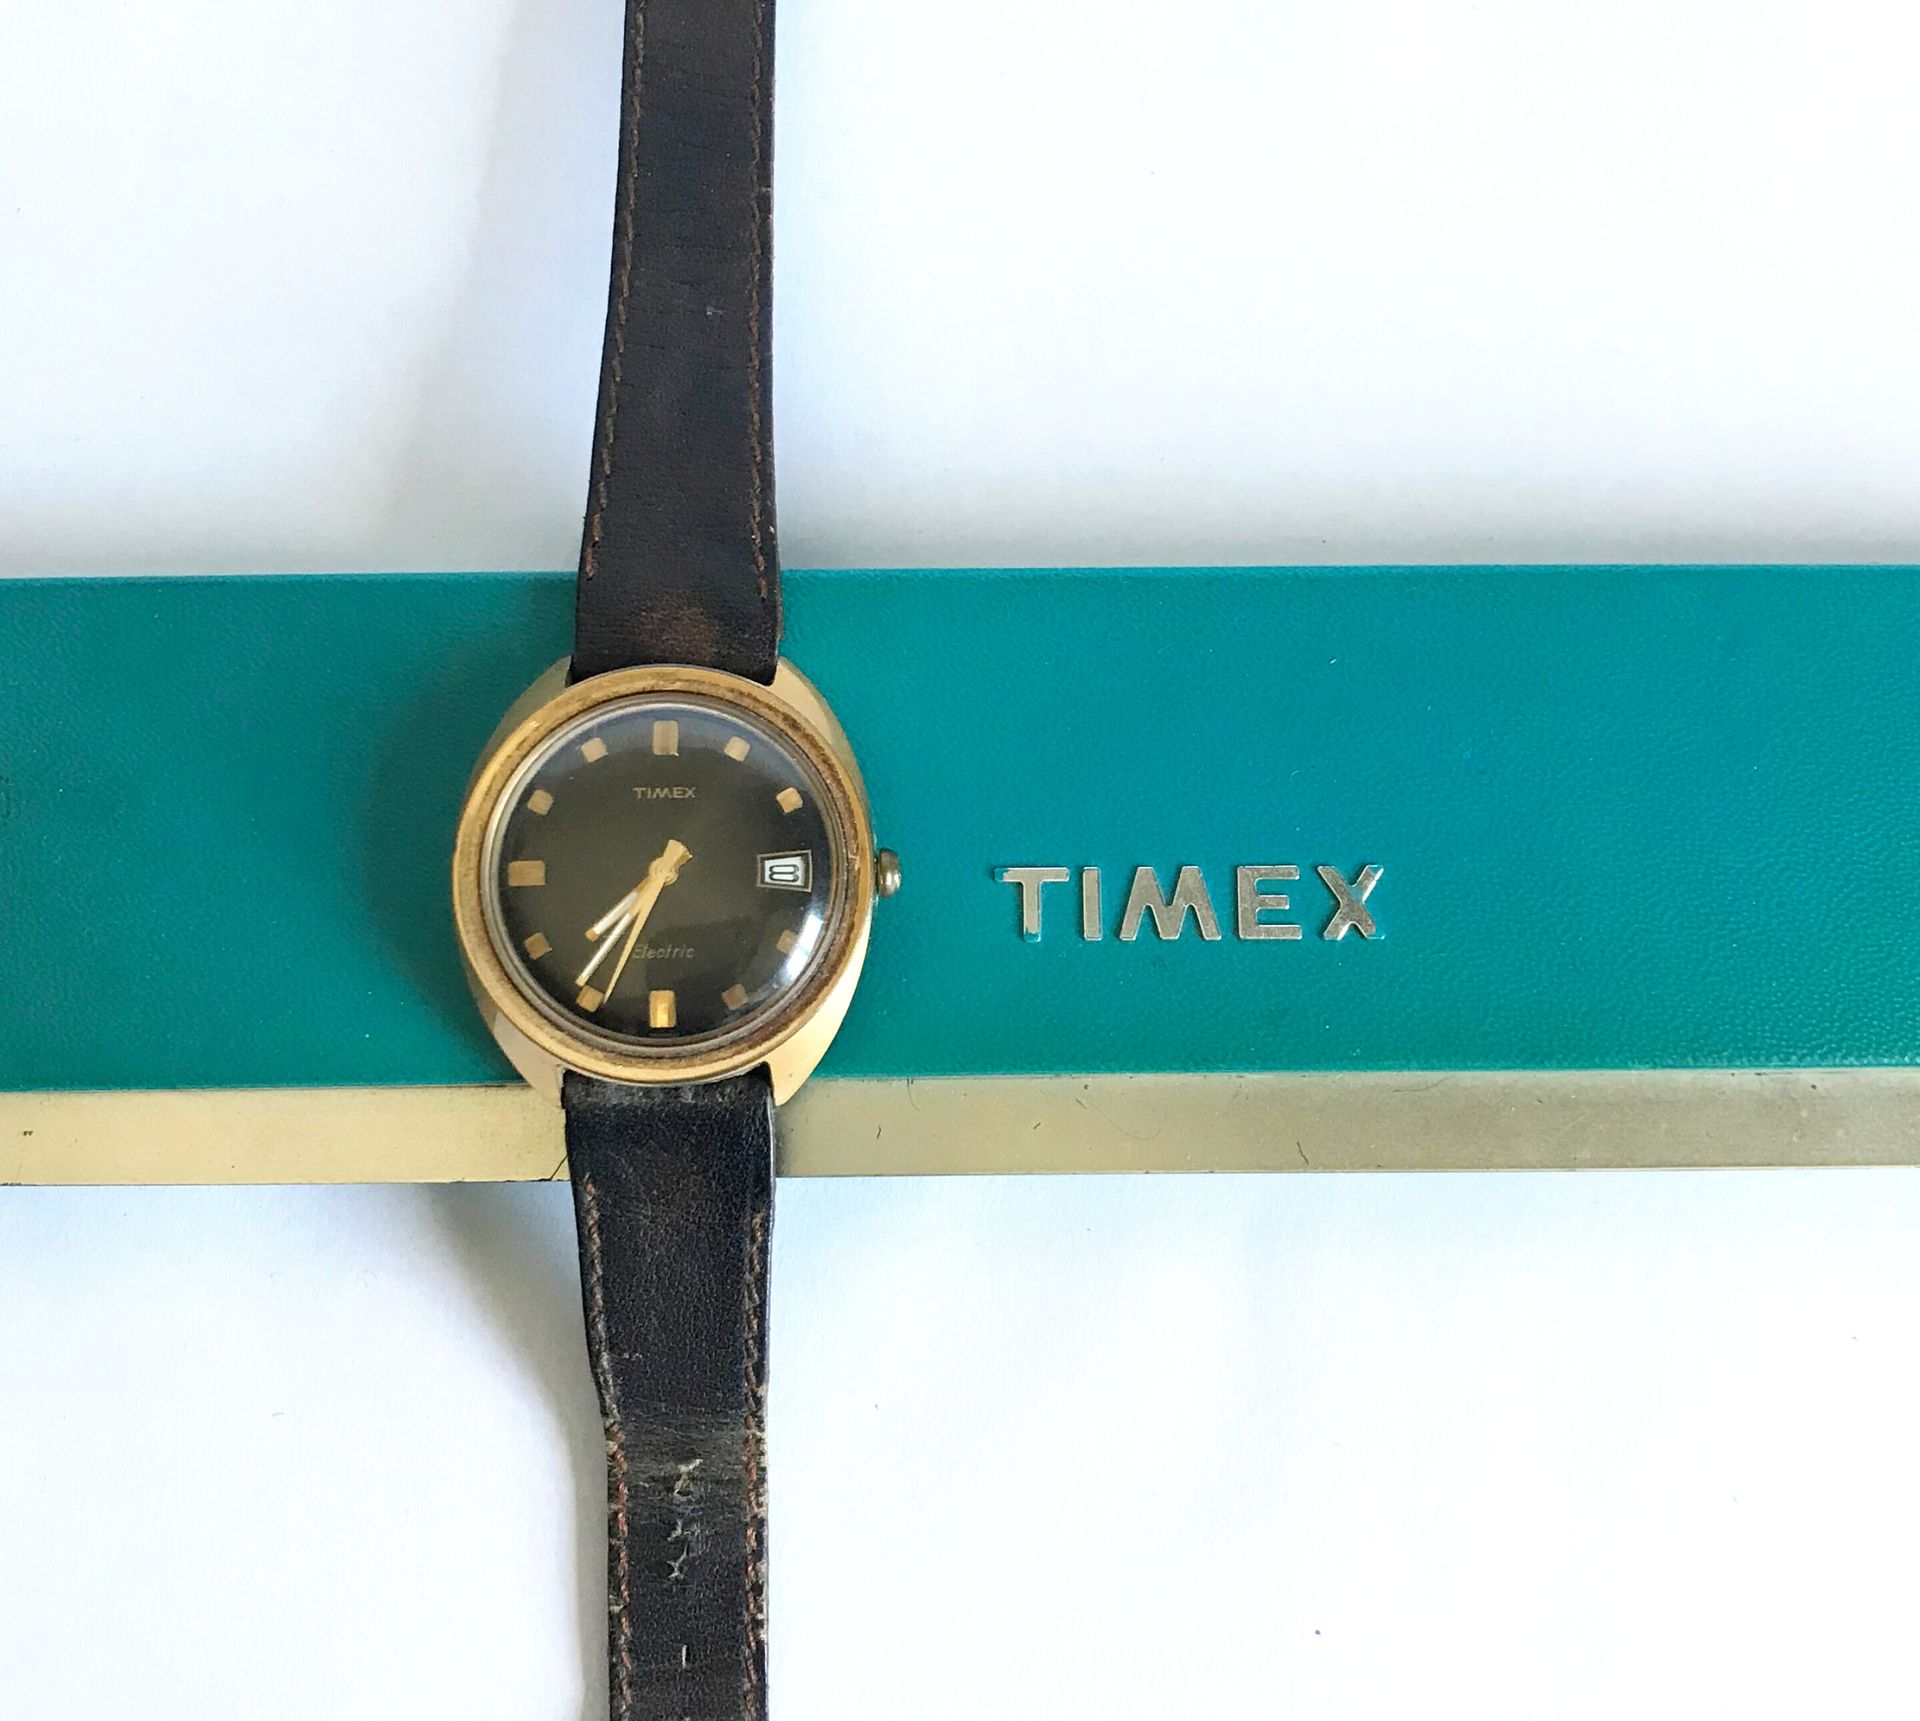 Null TIMEX - 复古
男士手表，镀金金属电池供电的电动机芯。圆形表盘，黑色背景。棍子数字。日期在3点钟方向。 
在它的盒子里
不保证精密度